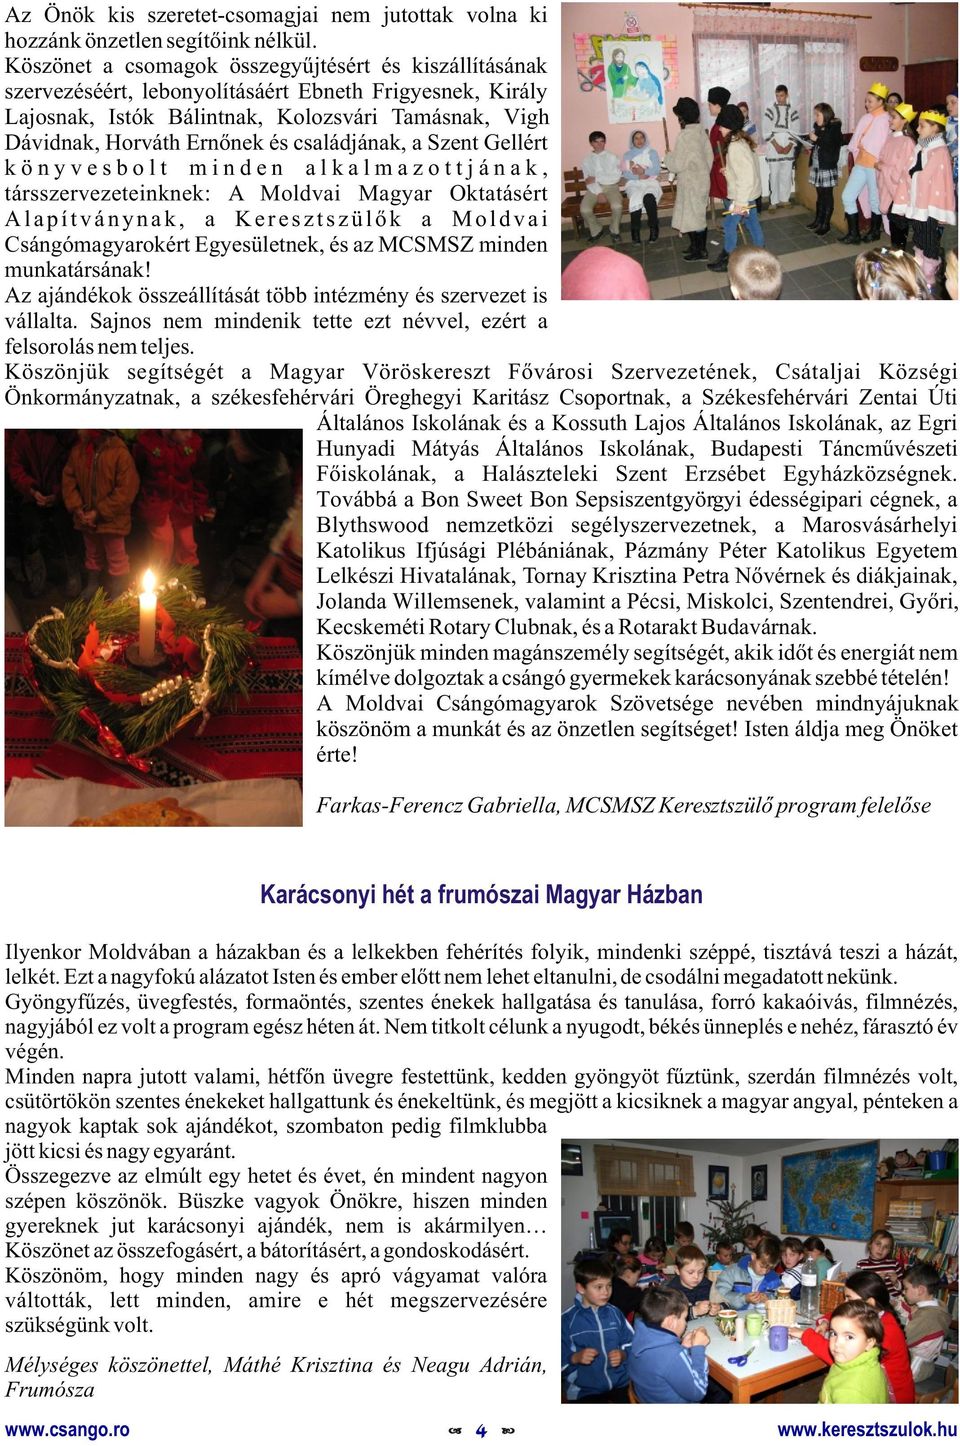 családjának, a Szent Gellért könyvesbolt minden alkalmazottjának, társszervezeteinknek: A Moldvai Magyar Oktatásért Alapítványnak, a Keresztszülõk a Moldvai Csángómagyarokért Egyesületnek, és az